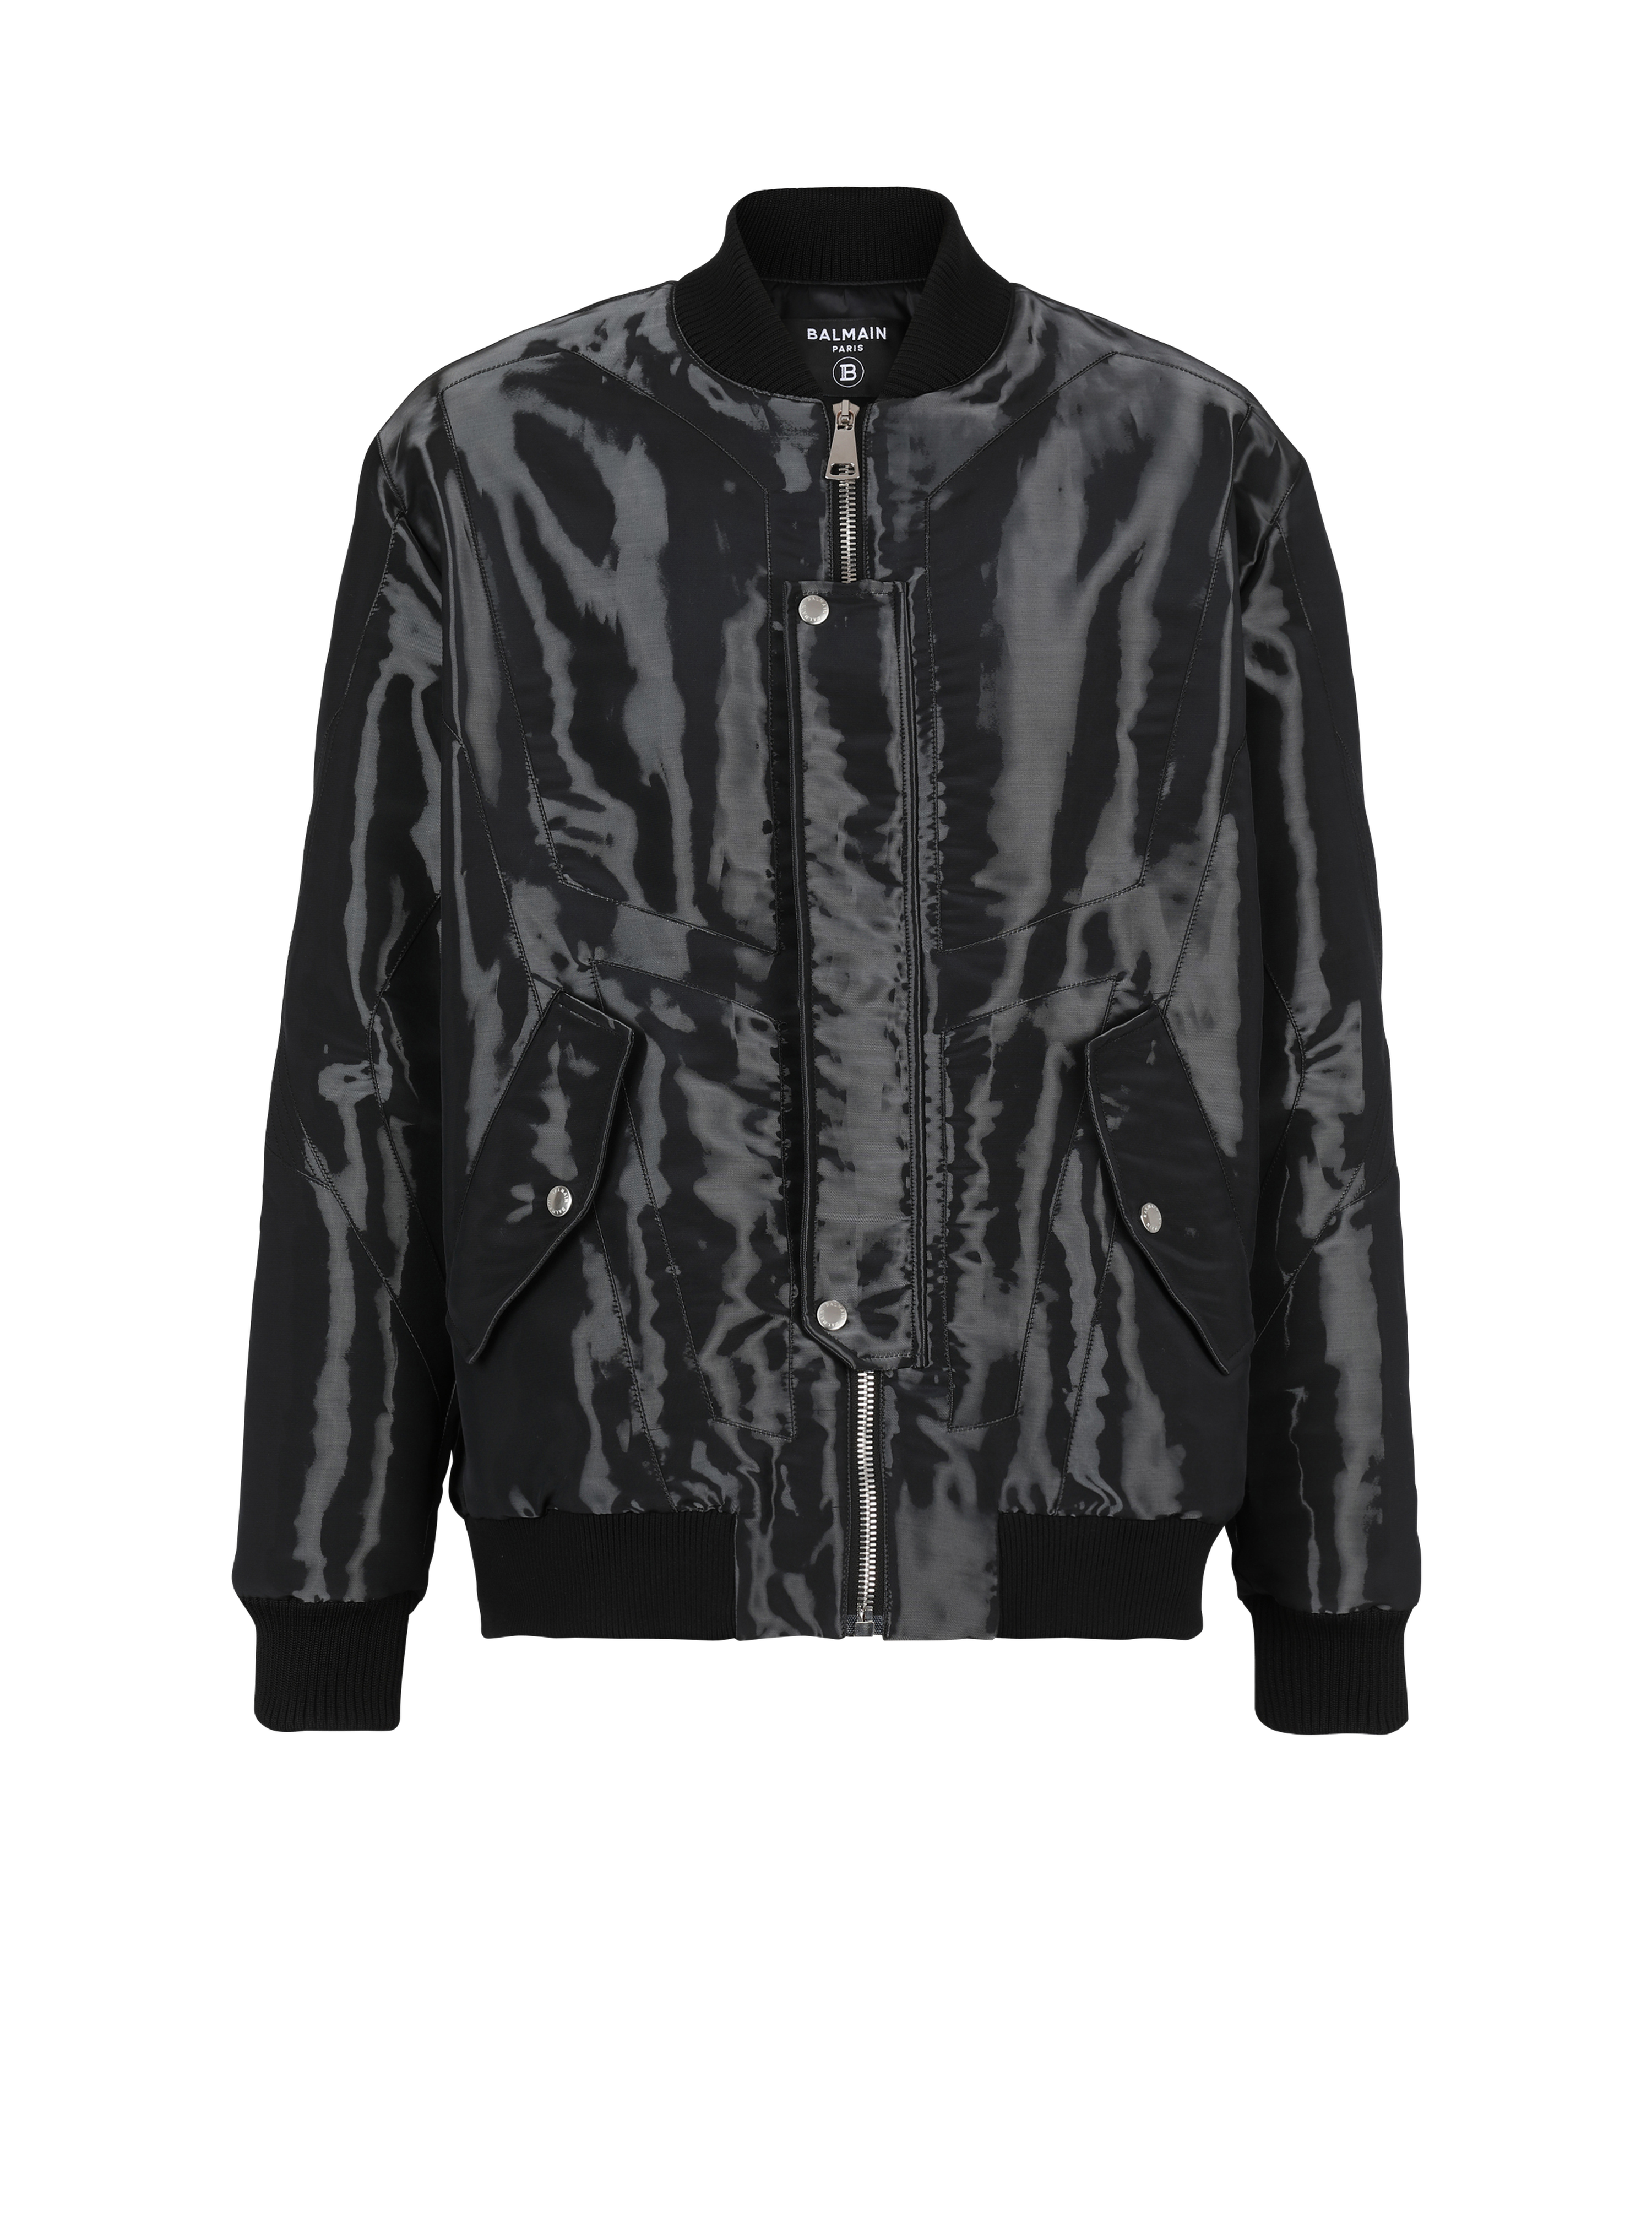 Laminated bomber jacket, black